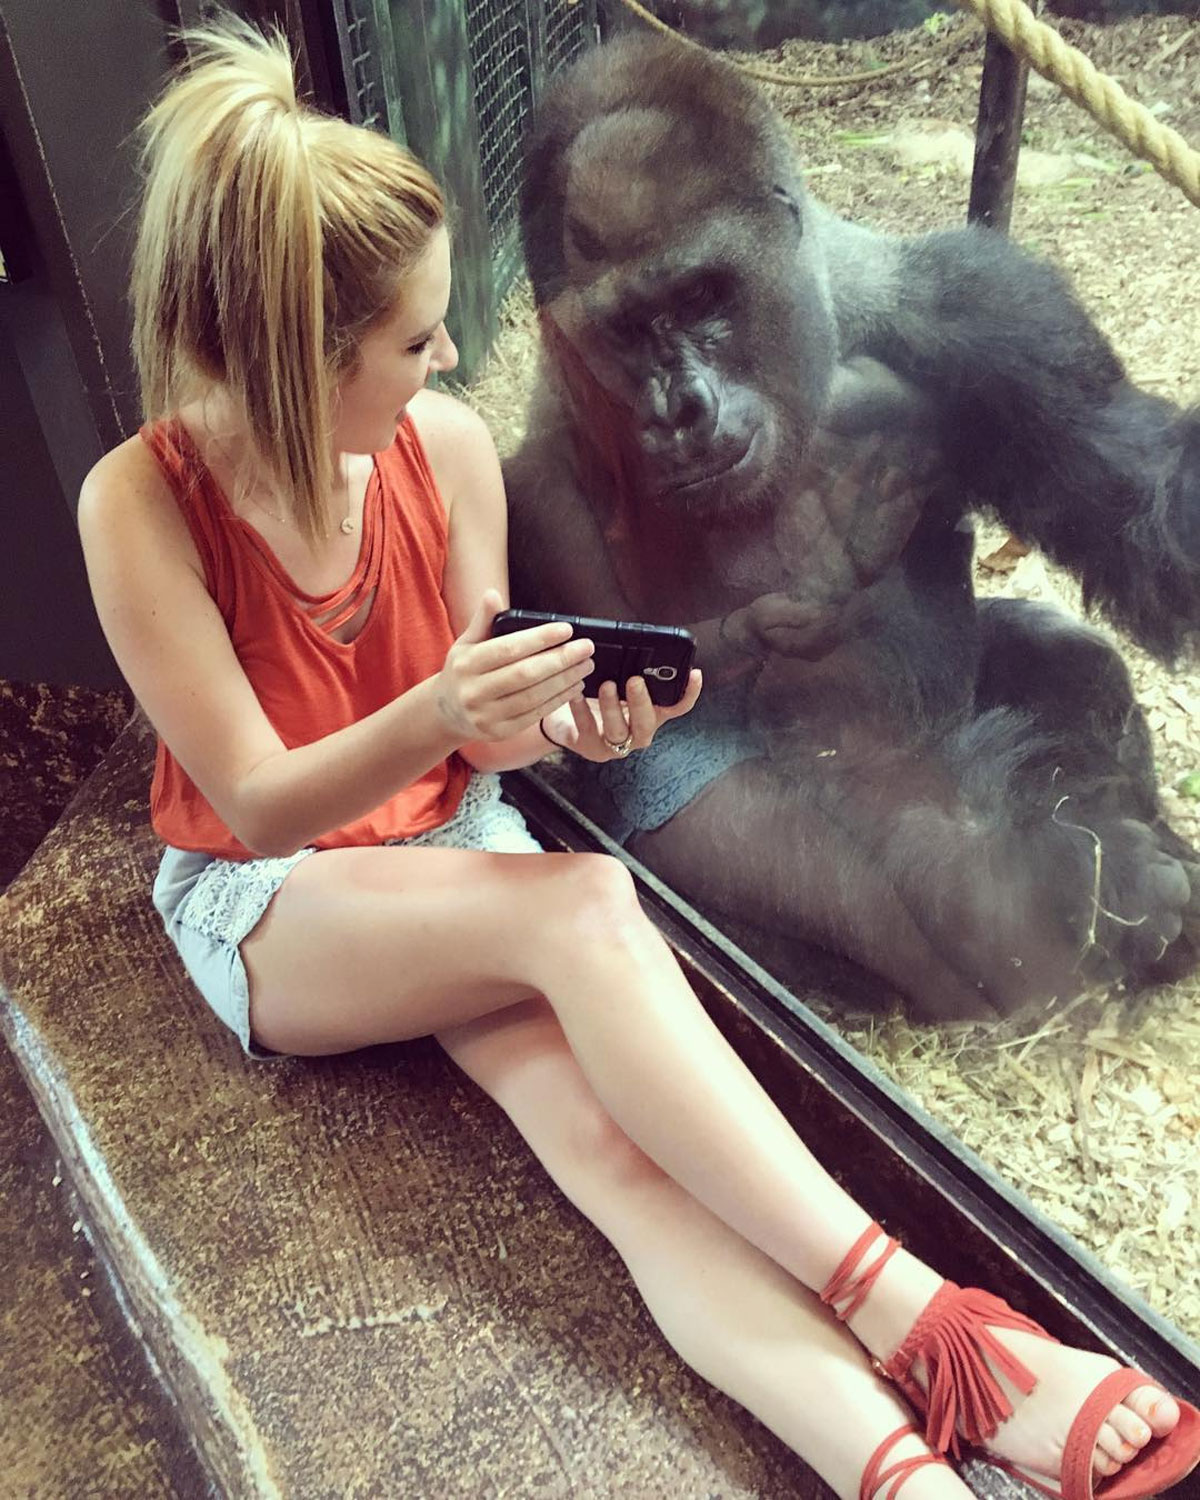 Jovem faz 'amizade' com gorila que gosta de assistir a vídeos no celular